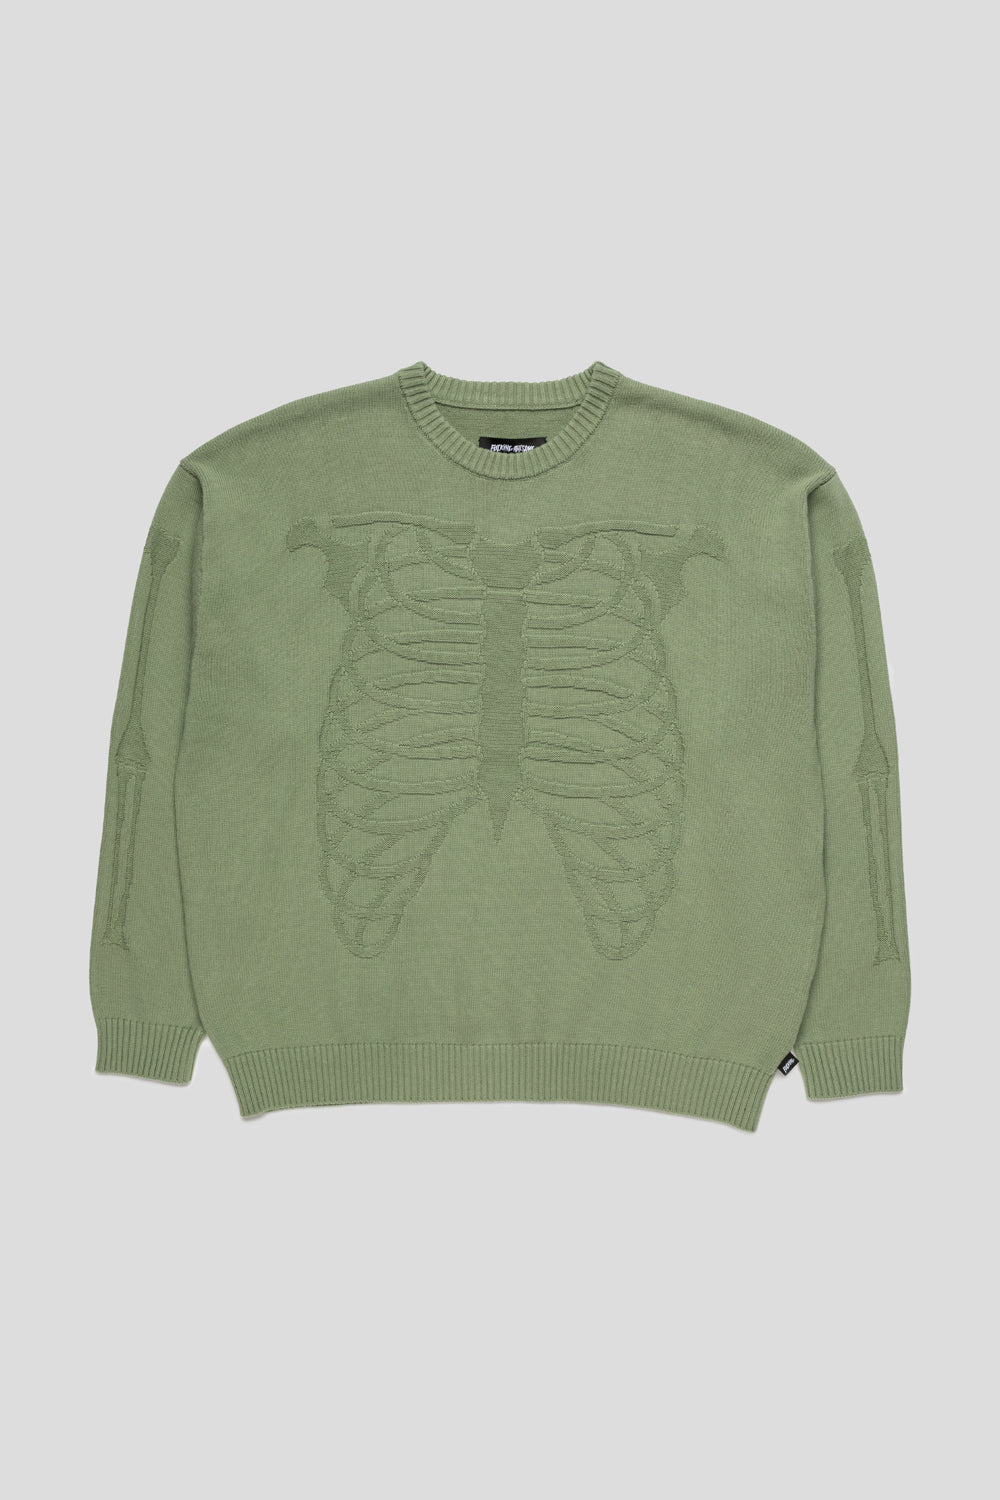 Skeleton Sweater